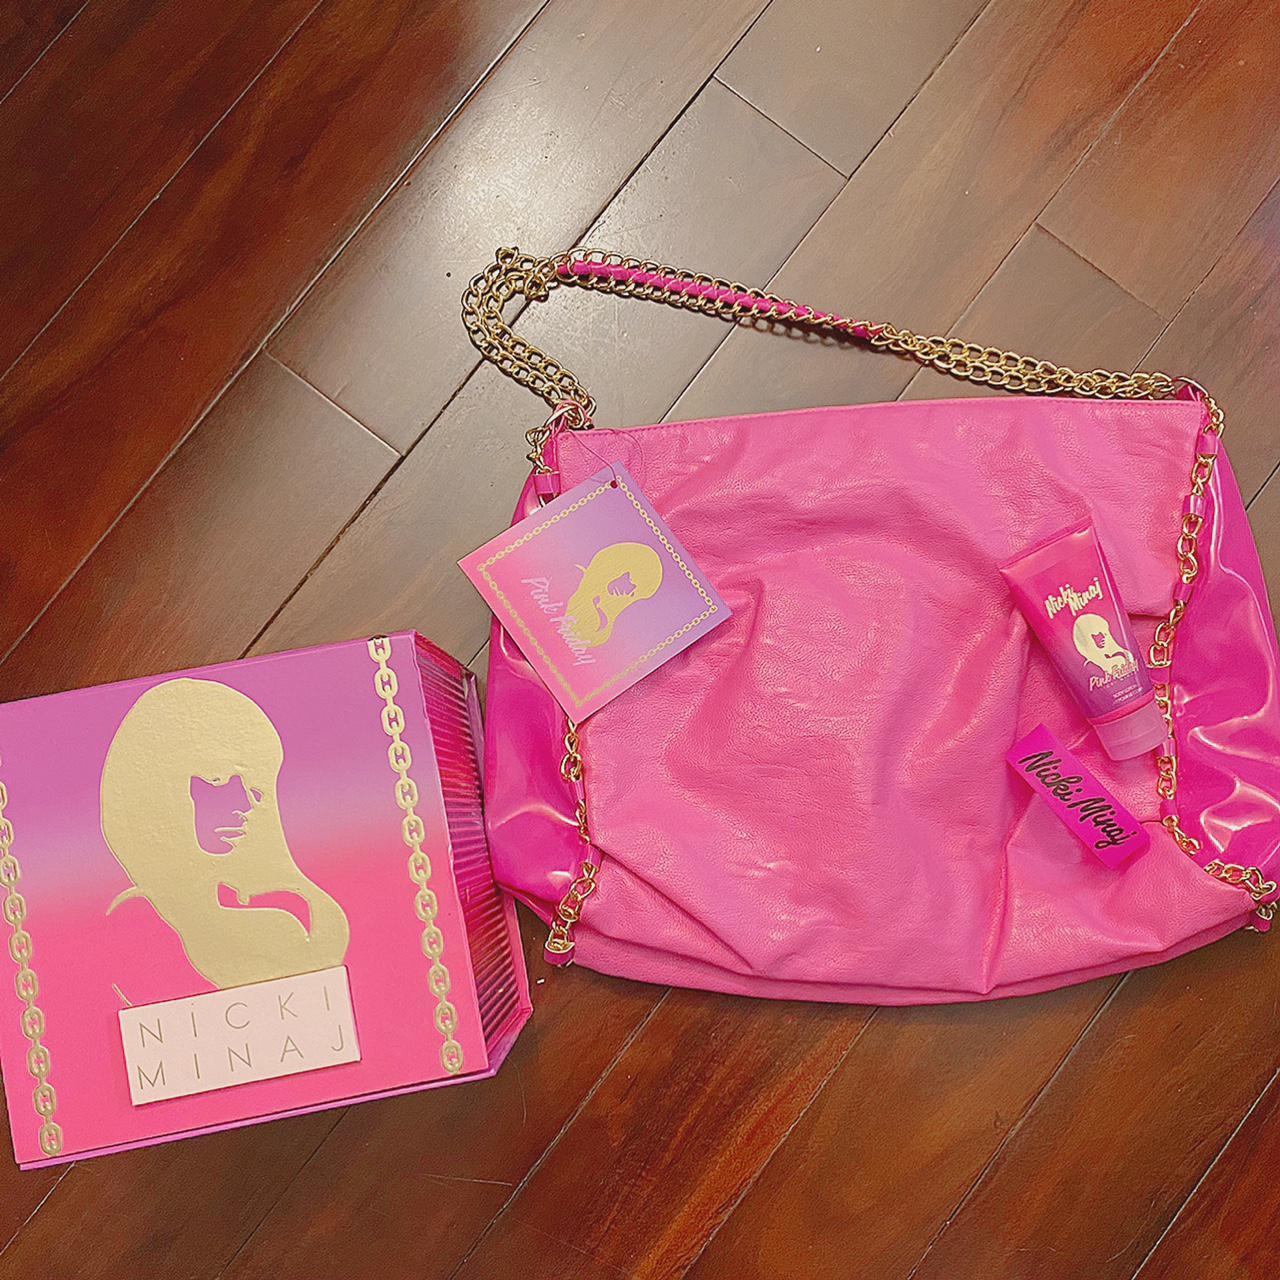 NICKI MINAJ Minajesty Studded Pink Tote Bag W/Gold-Tone Chain Purse Handbag  NWT | eBay